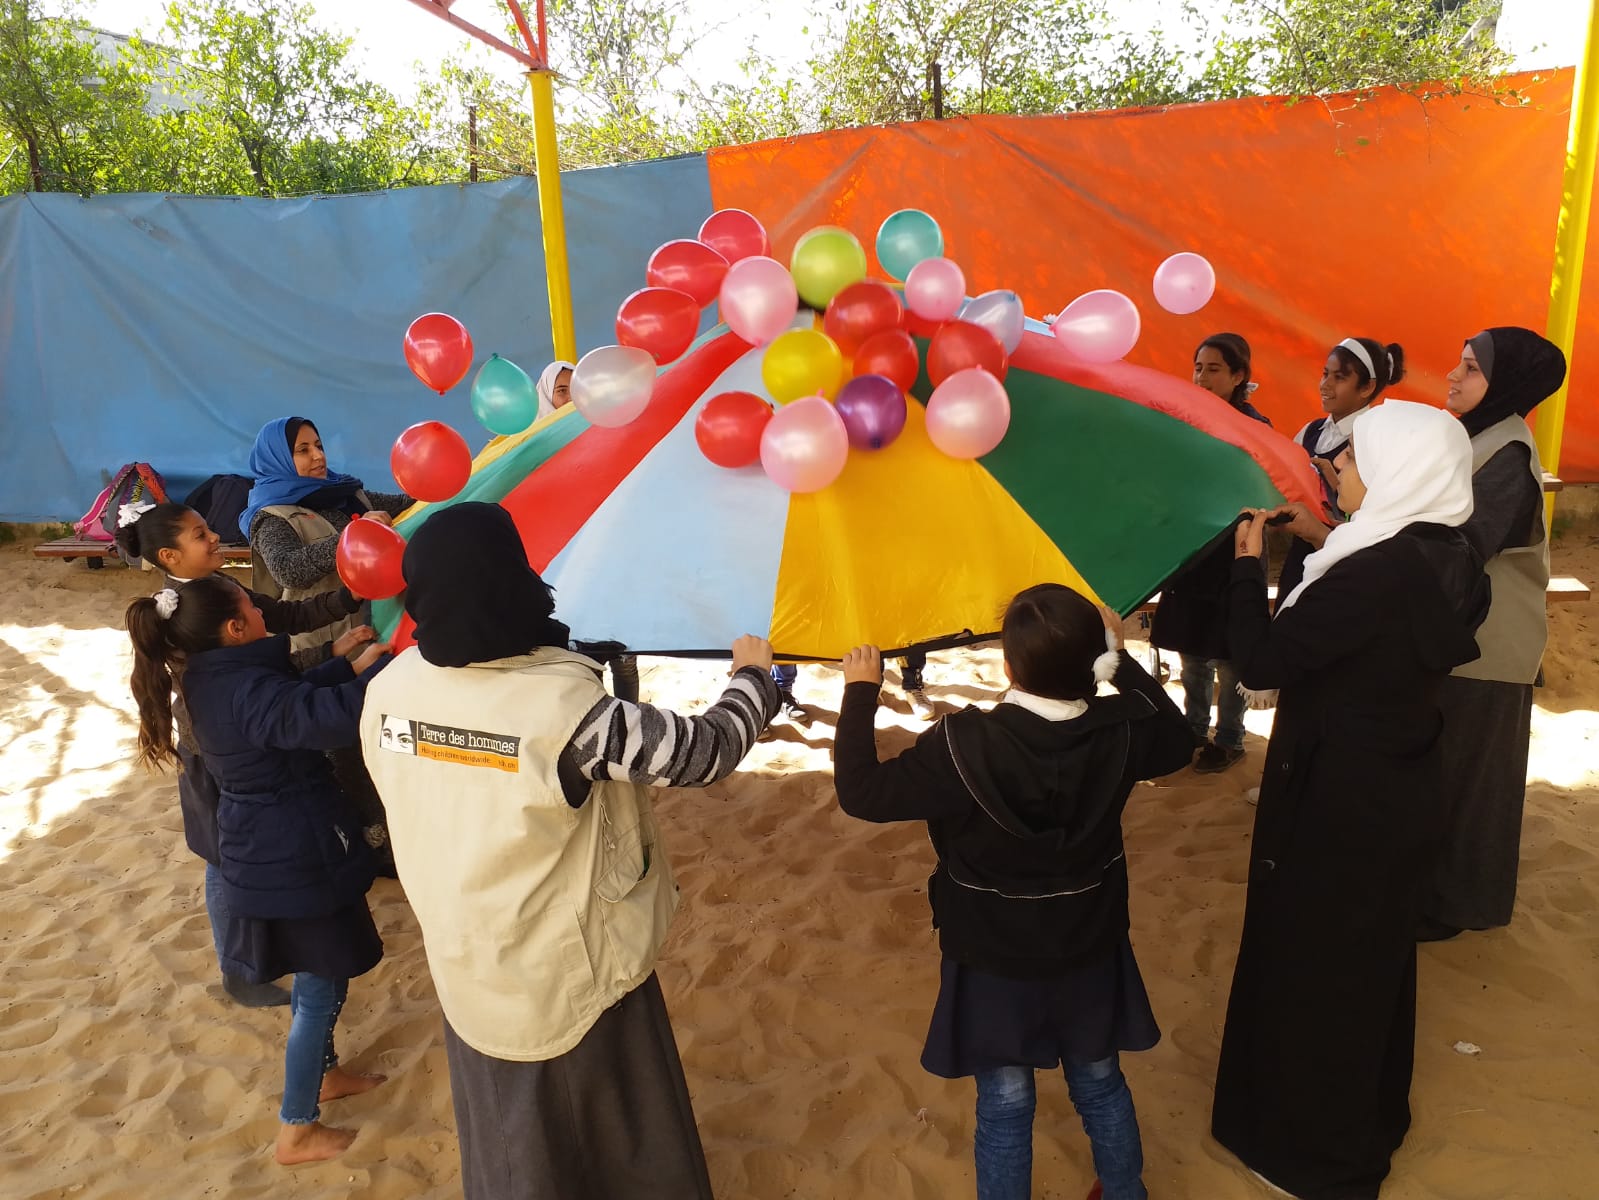 اطفال مشاركون في فعالية للدعم النفسي والاجتماعي في بيت لاهية في قطاع غزة. تصوير: Terre des Hommes Lausanne